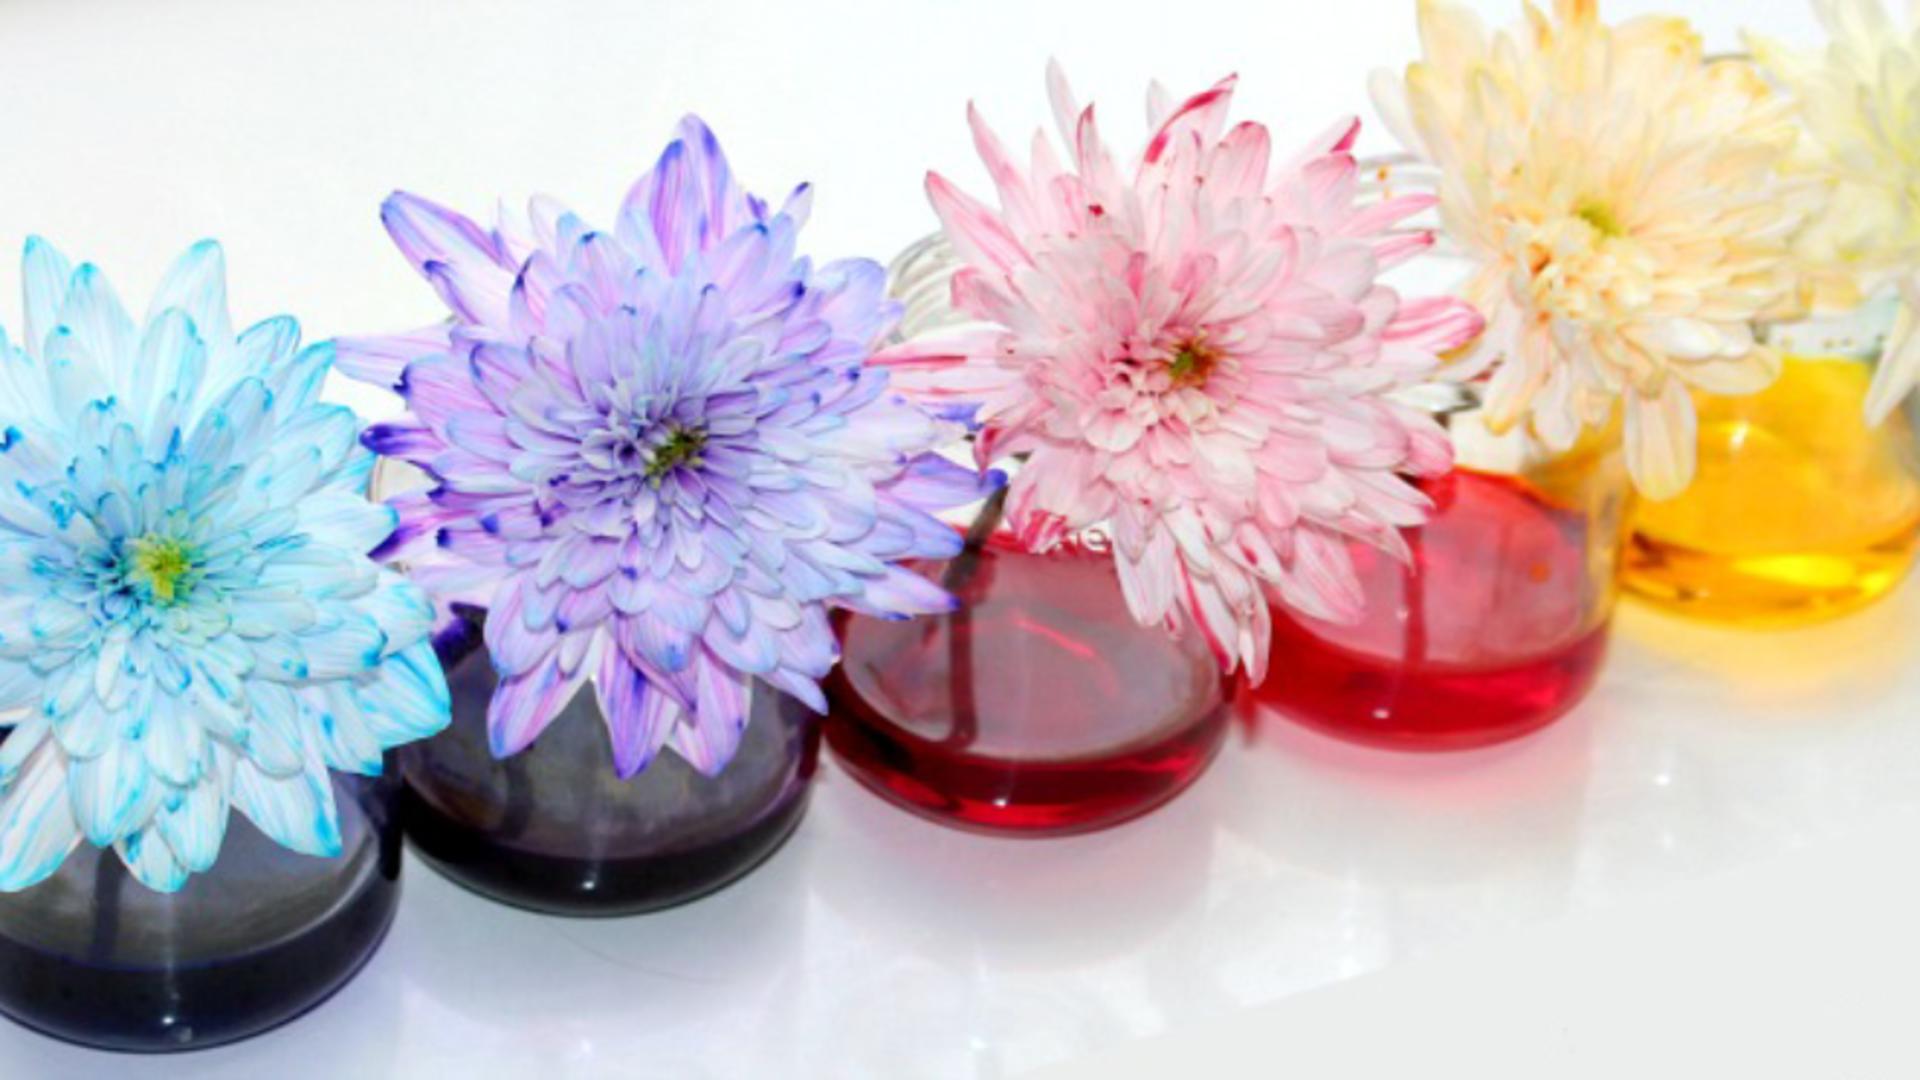 Metoda extraordinară prin care colorezi florile în mod natural